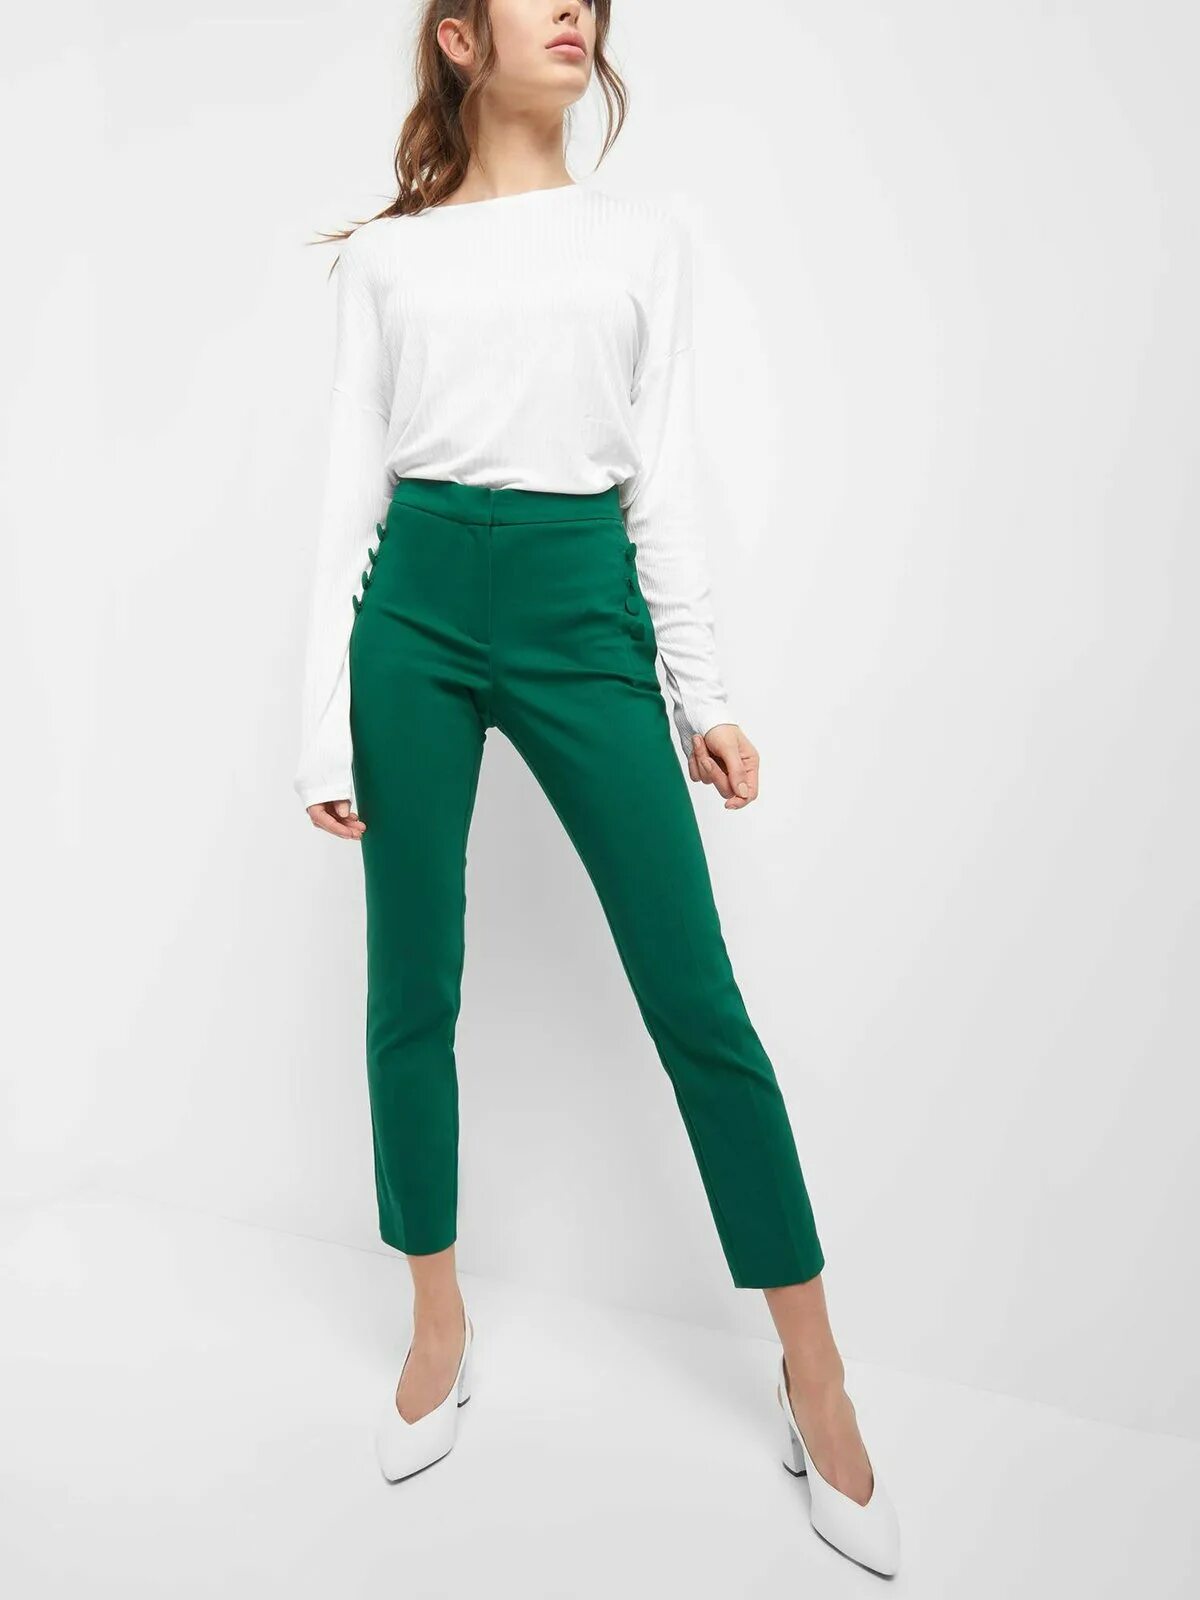 Купить зеленые штаны. Ted Baker зеленые брюки 2022. Зелёные брюки женские. Зеленые прямые брюки. Женские брюки зеленого цвета.